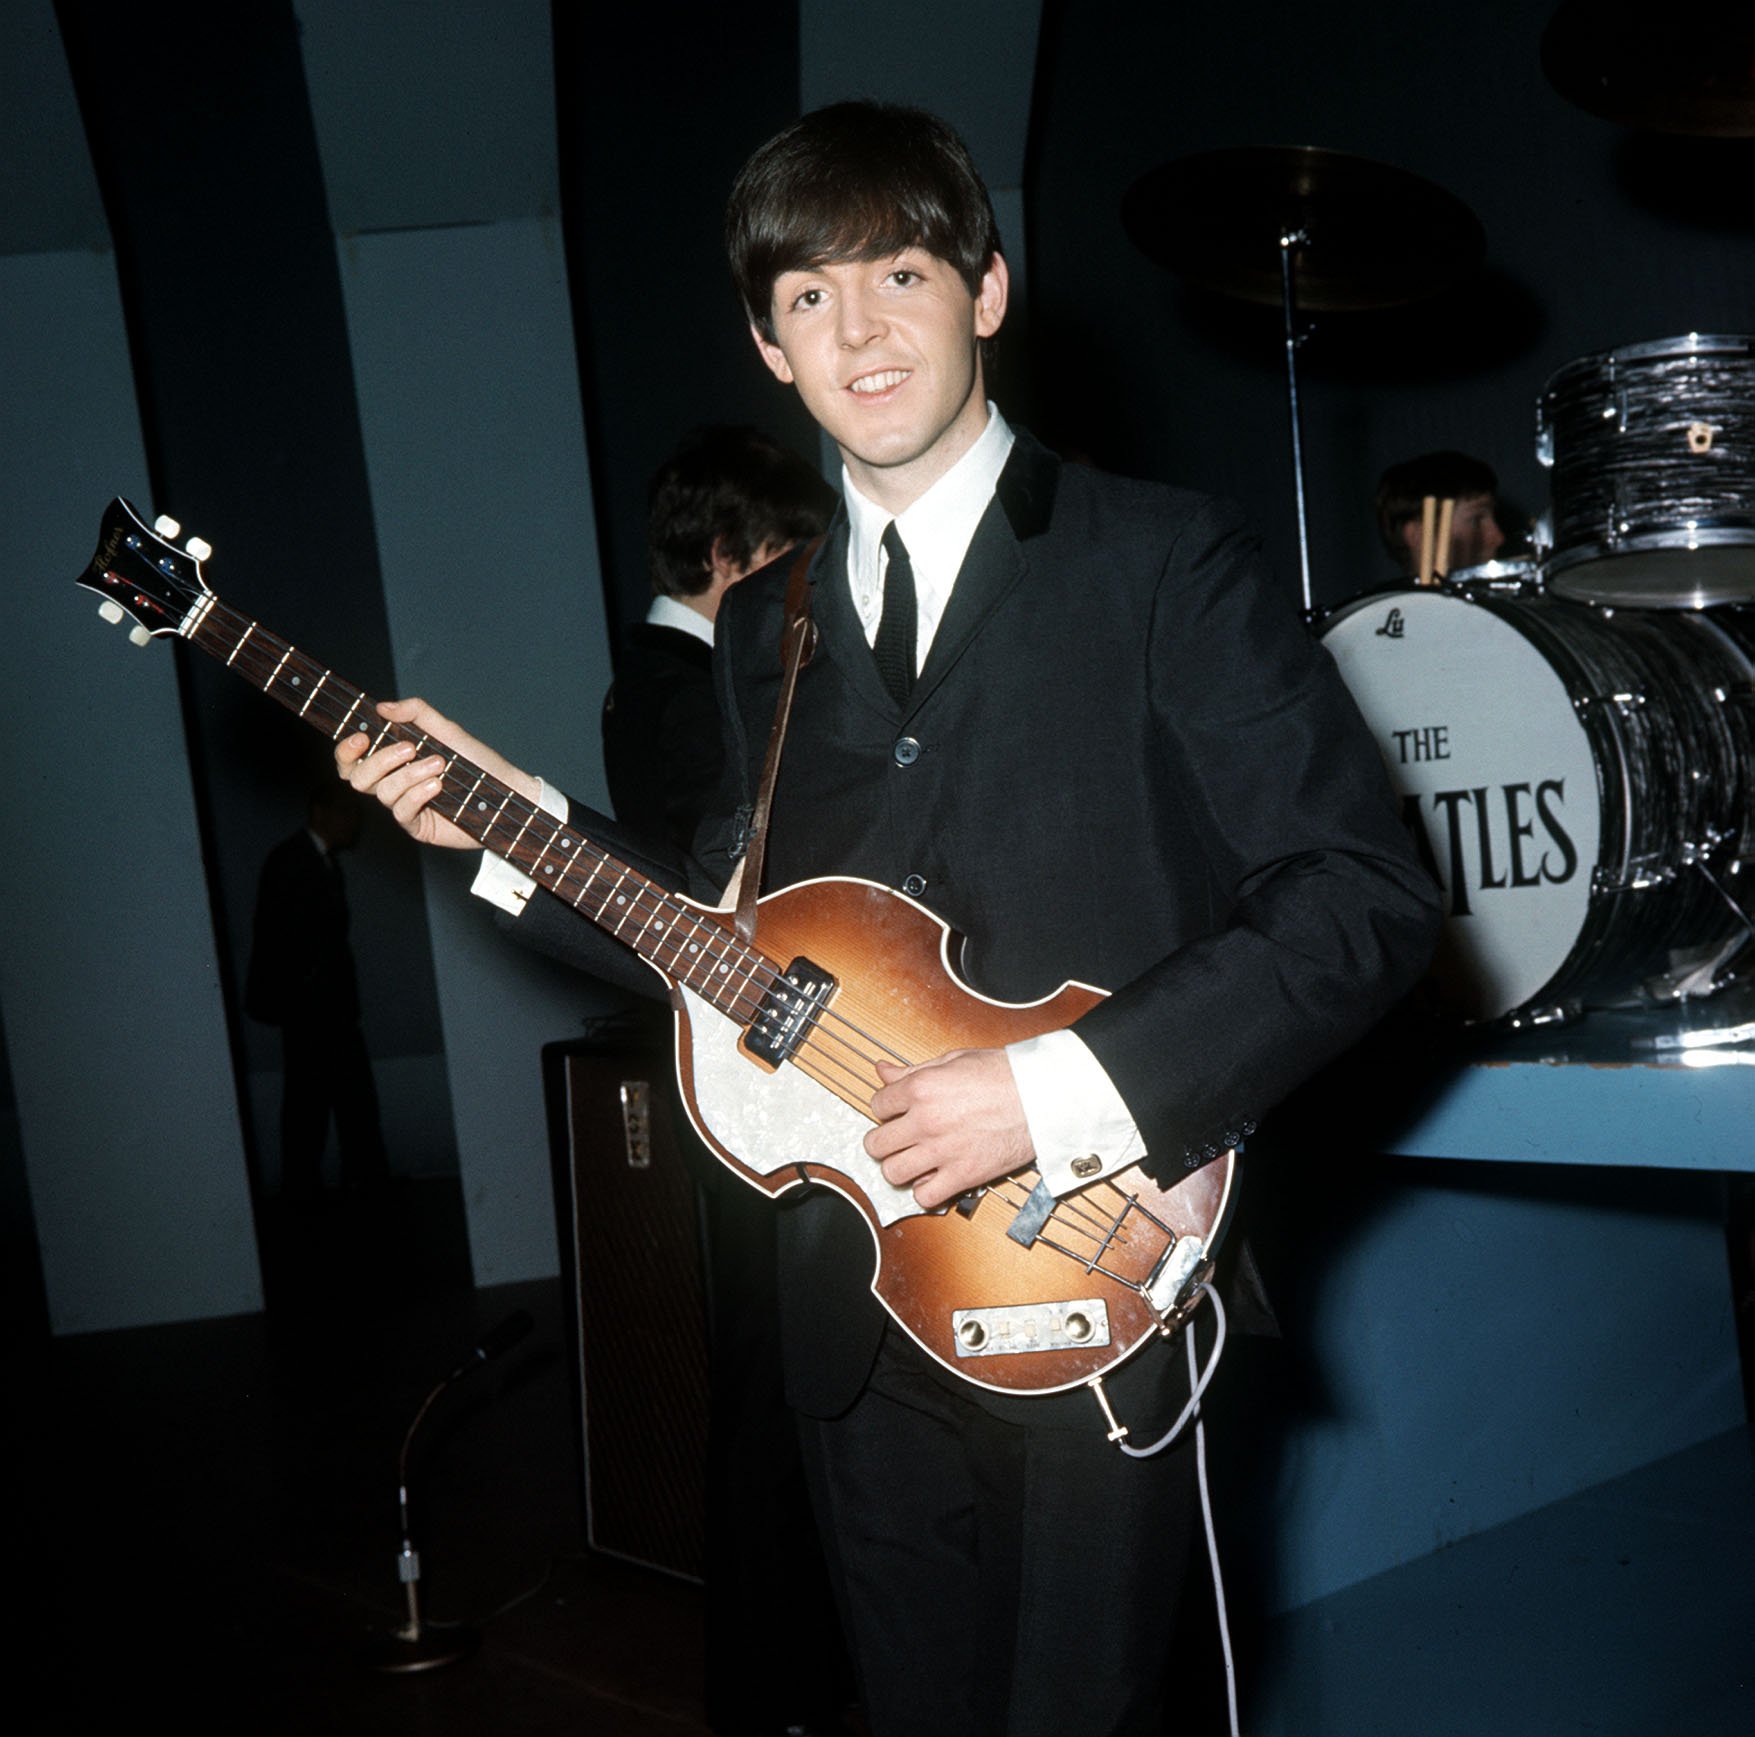 Paul McCartney, a.k.a. The Cute Beatle, holding a guitar